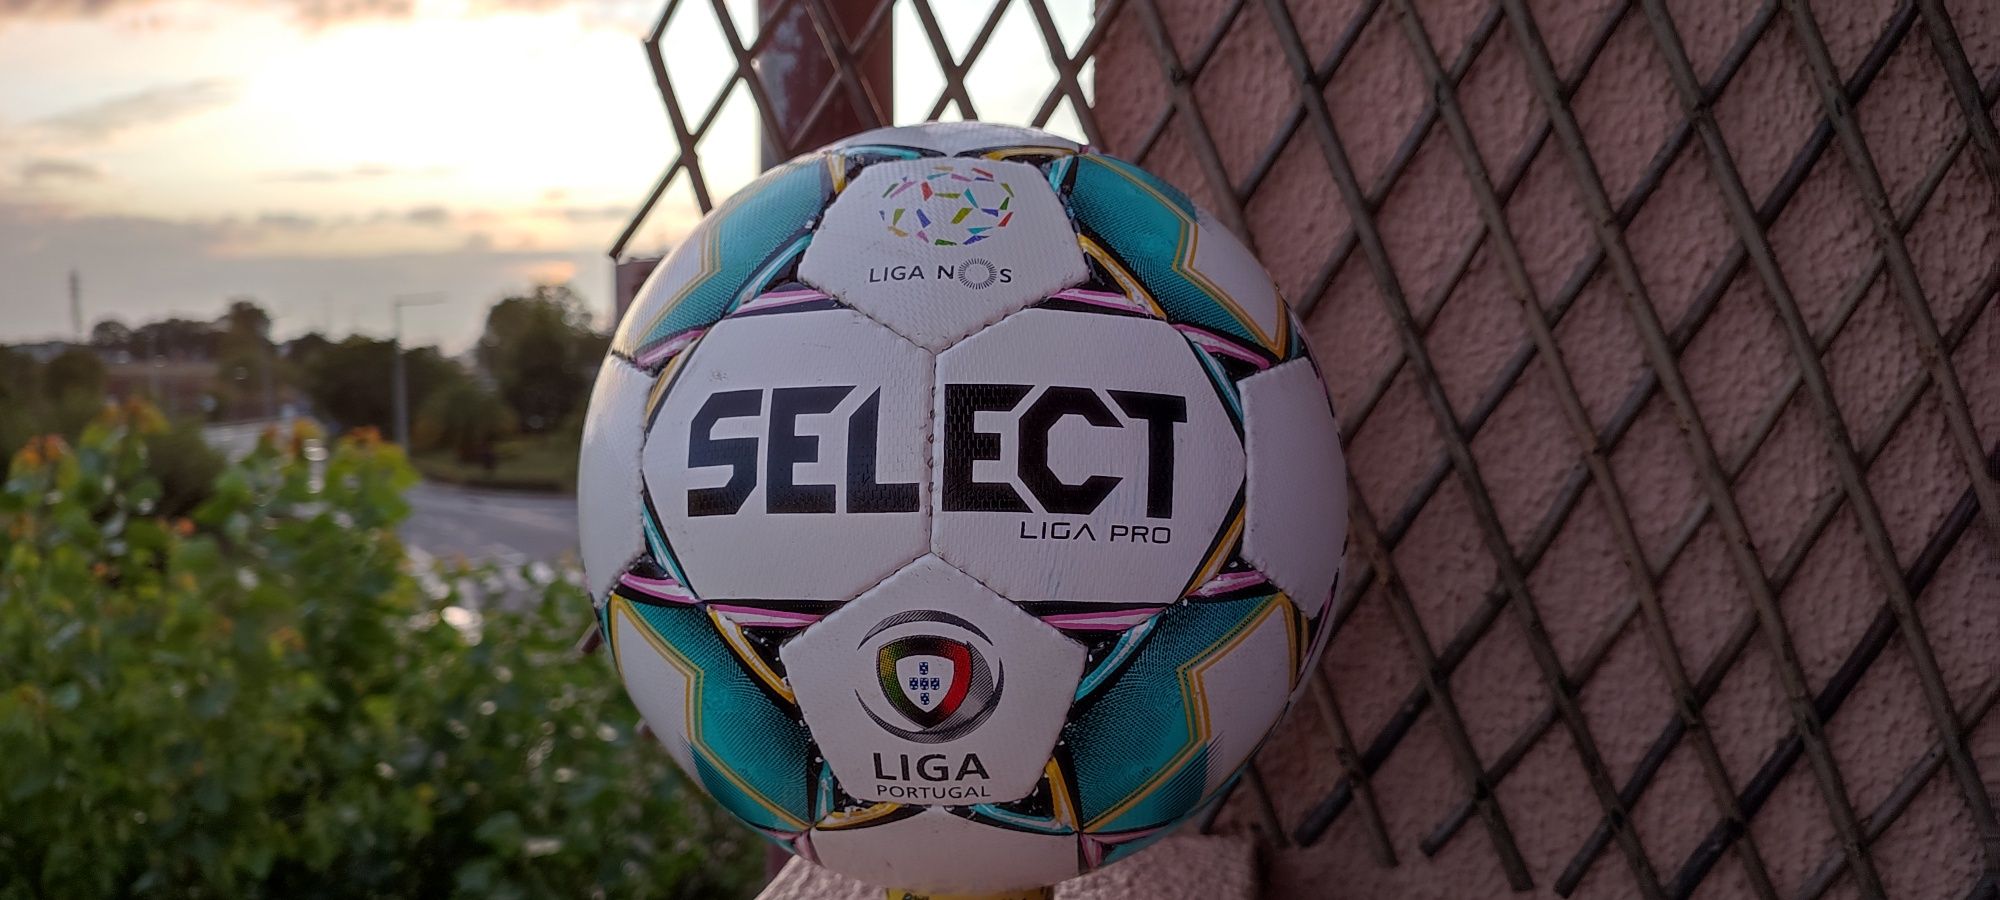 Select Ball Liga NOS 20/21 *Sporting Campeão